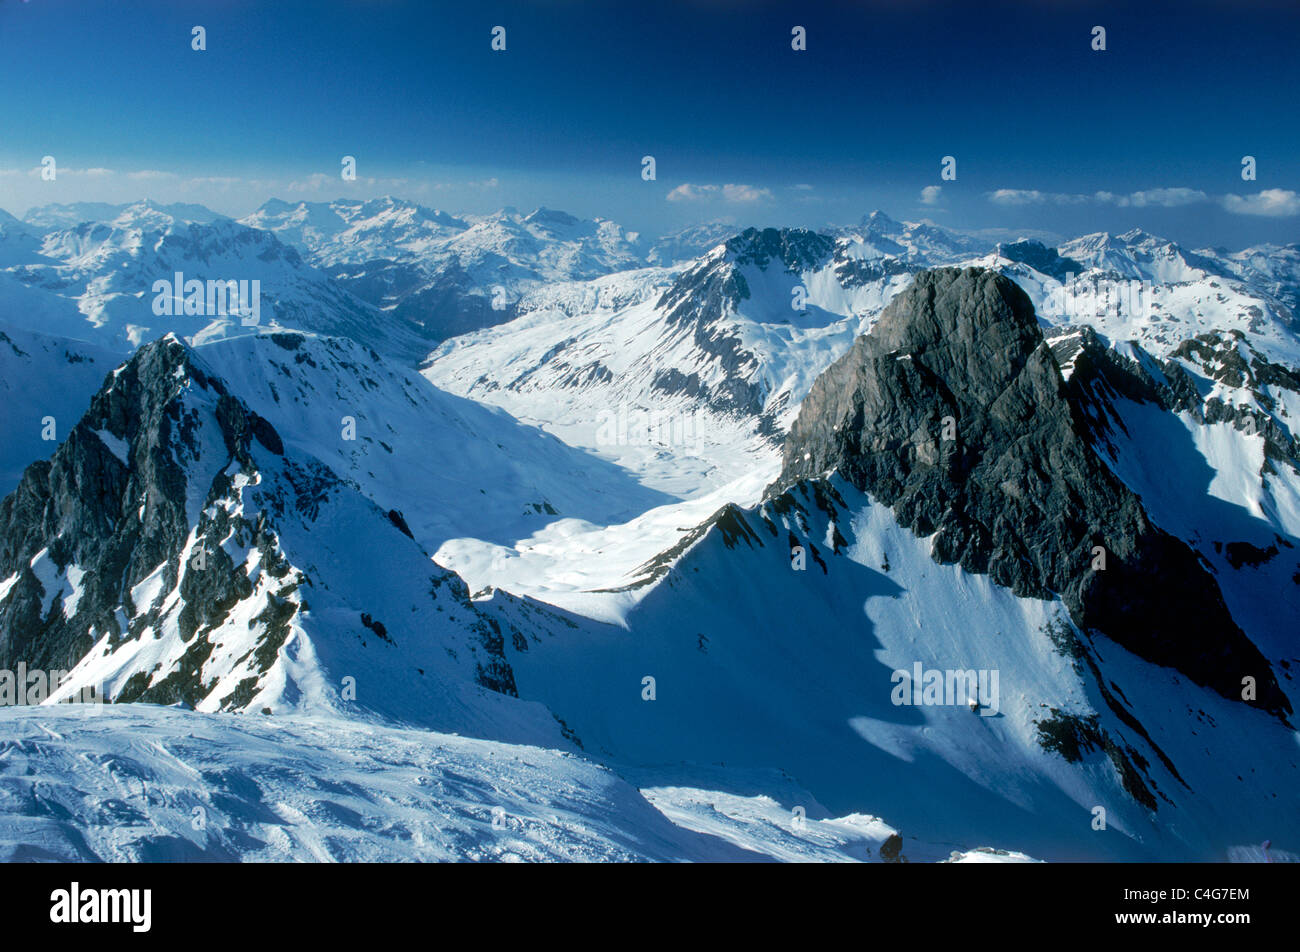 St Anton am Arlberg "berceau du ski alpin" de l'Autriche est un paradis enneigé de la haute altitude et de haute qualité Banque D'Images